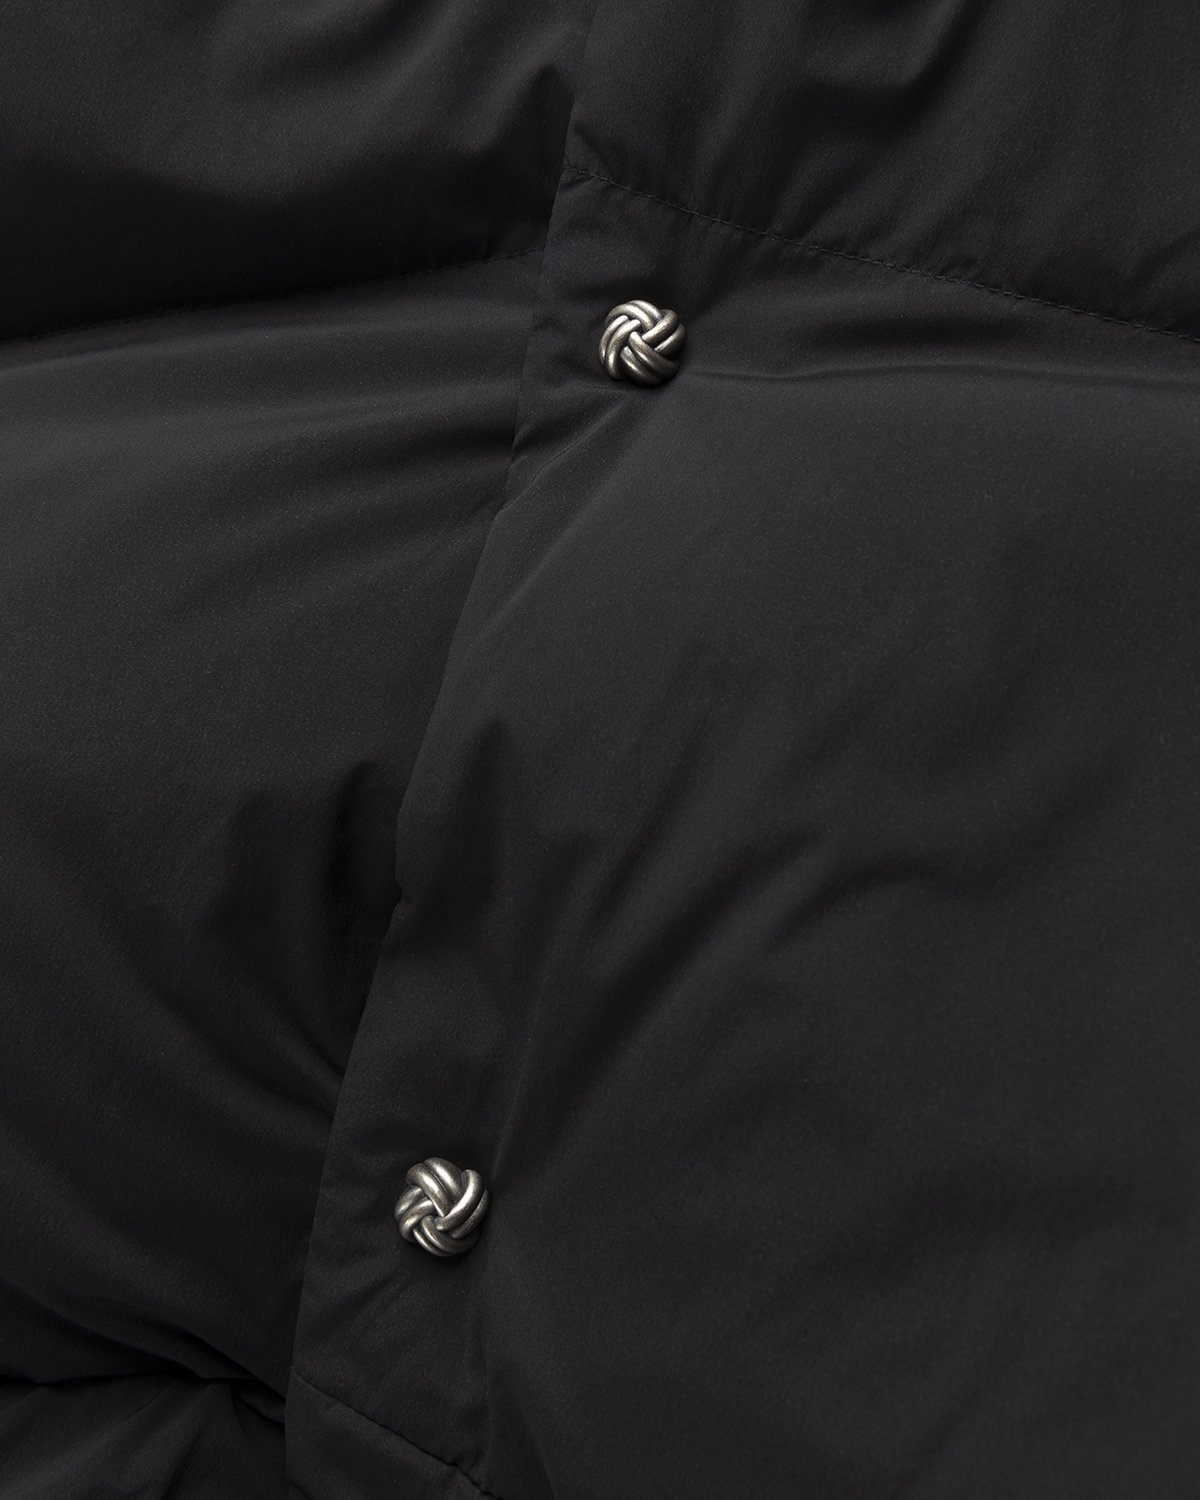 Acne Studios - Puffer Jacket Black - Clothing - Black - Image 4